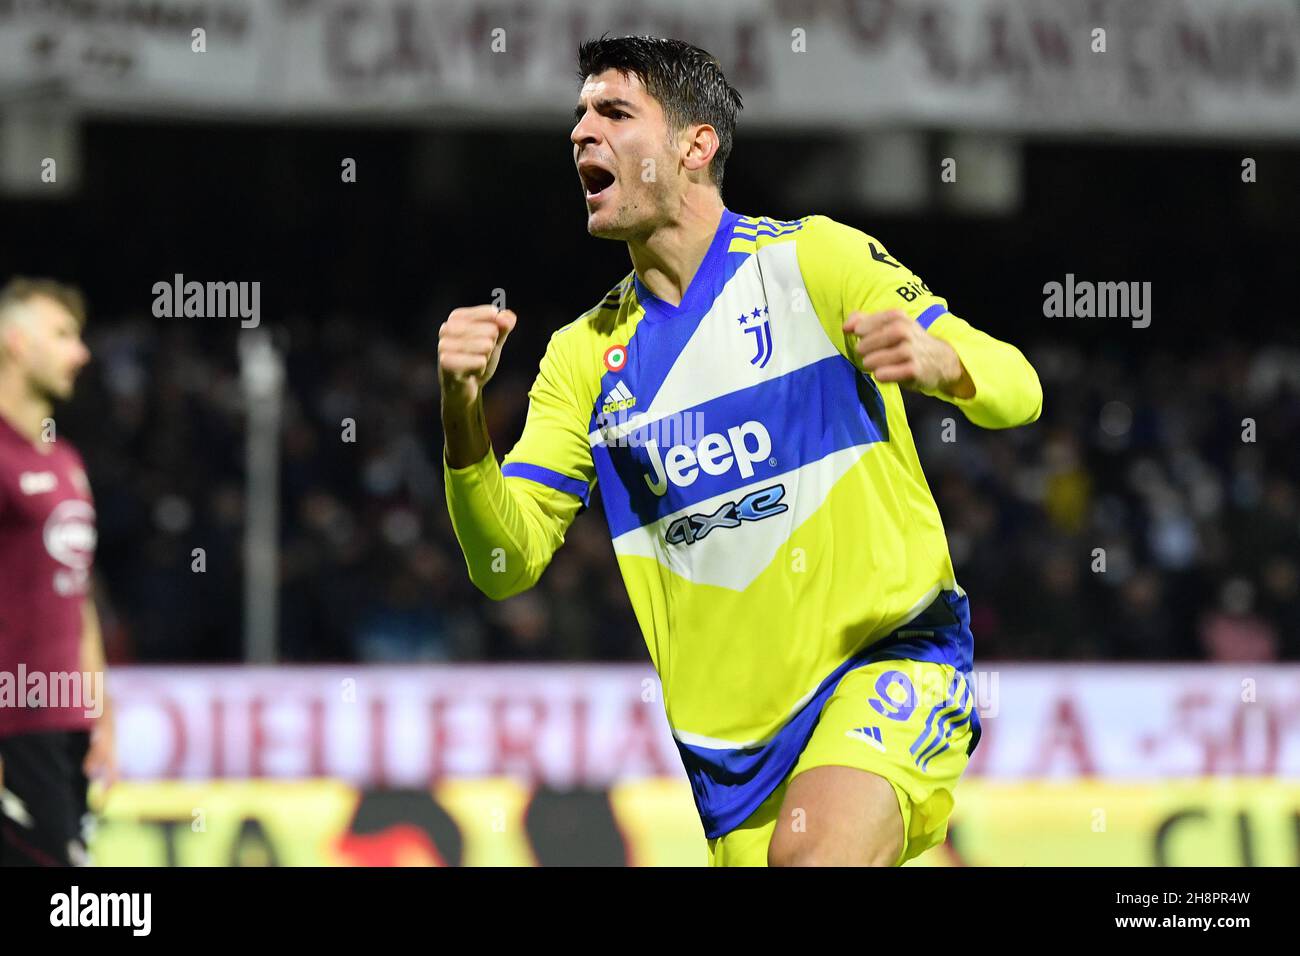 Juventus salernitana hi-res stock photography and images - Alamy